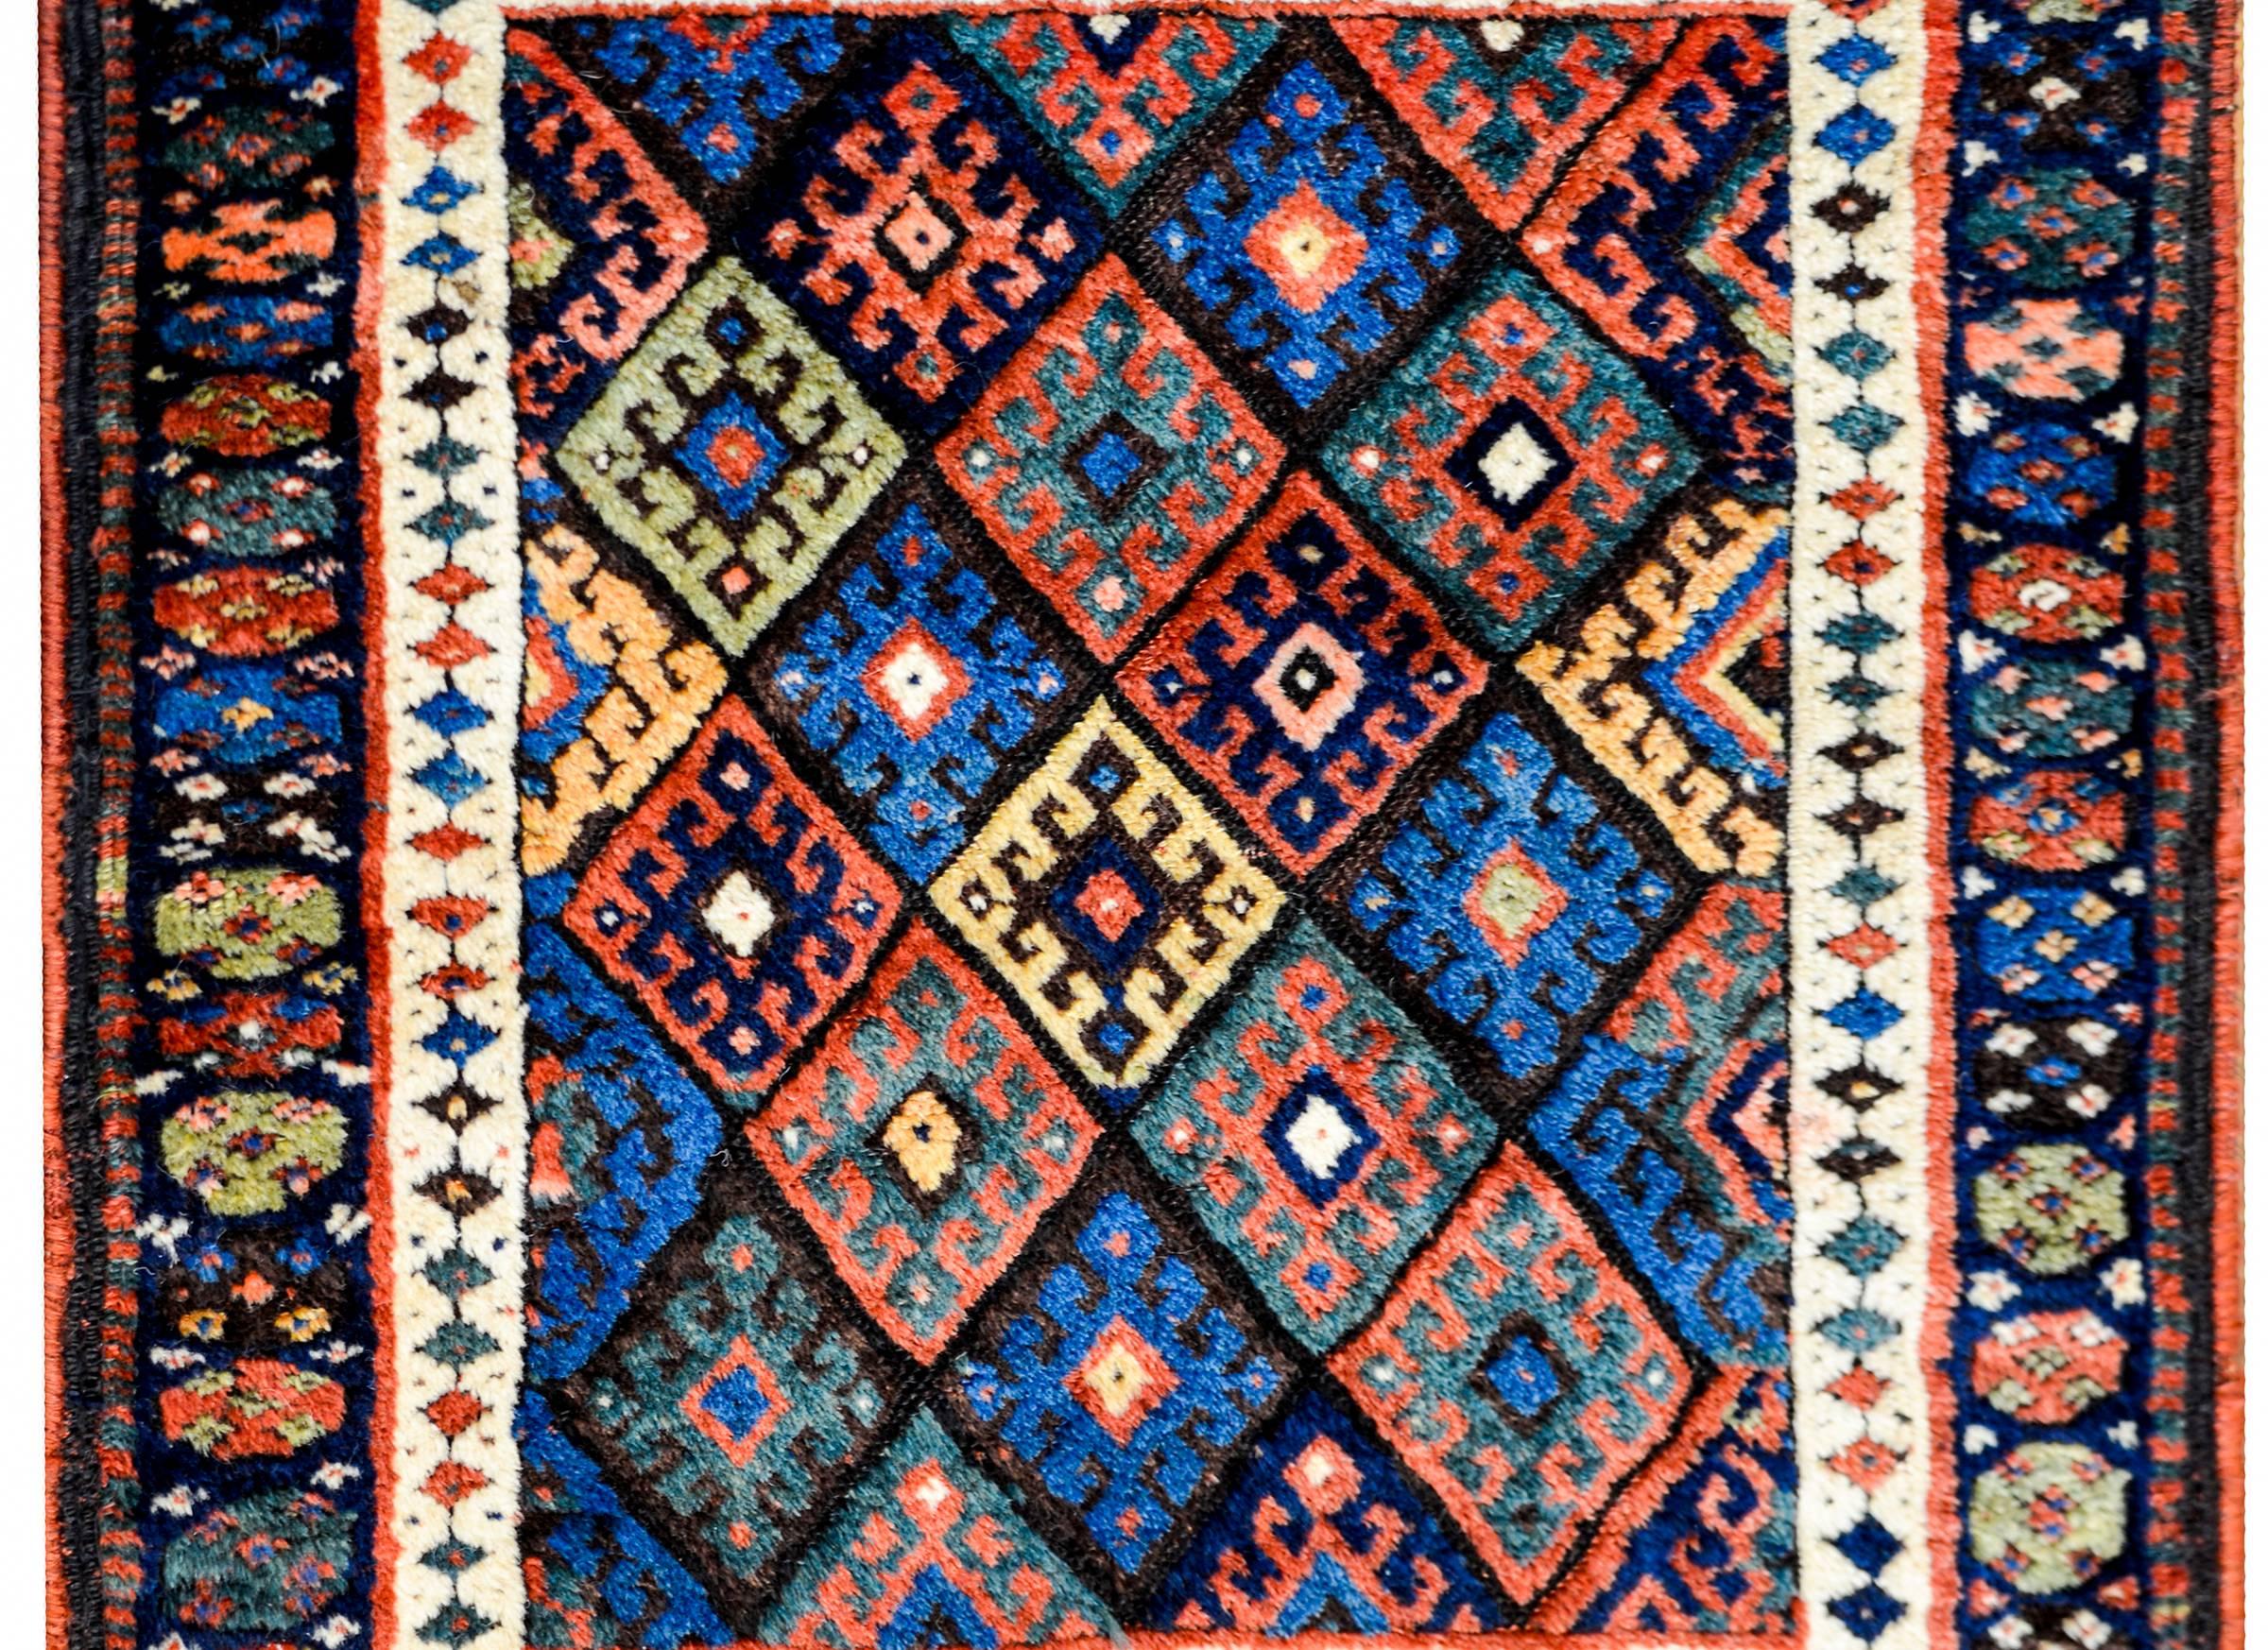 Ein wunderschöner kurdischer Jaff-Teppich aus dem frühen 20. Jahrhundert mit einem komplexen Muster aus mehreren Rauten mit stilisierten Blumen, gewebt aus purpurroter, indigoblauer, grüner, schwarzer und gelber Wolle. Die Bordüre ist komplex, mit